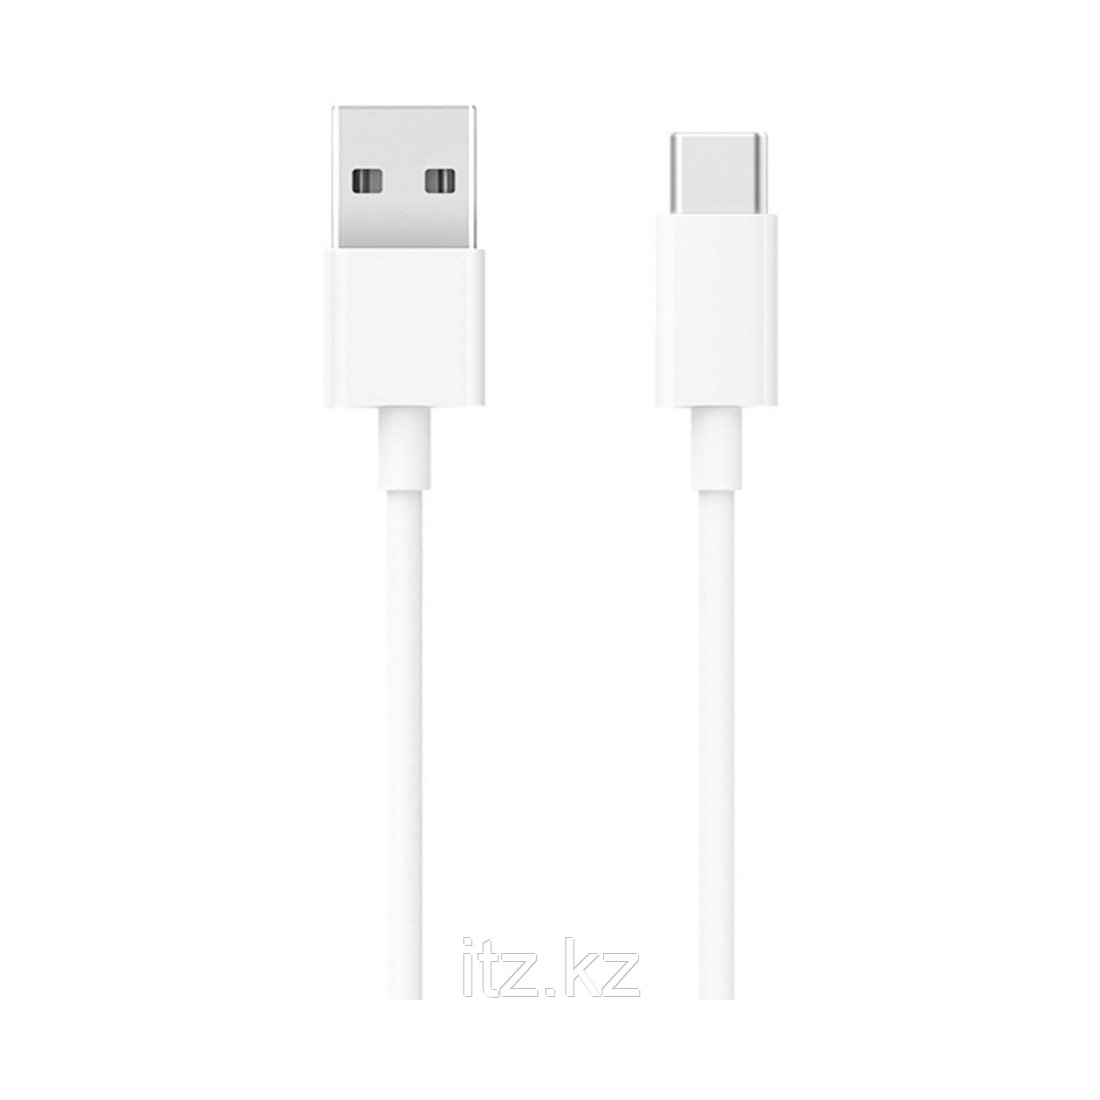 Интерфейсный кабель Xiaomi Mi USB-C Cable 100см Белый